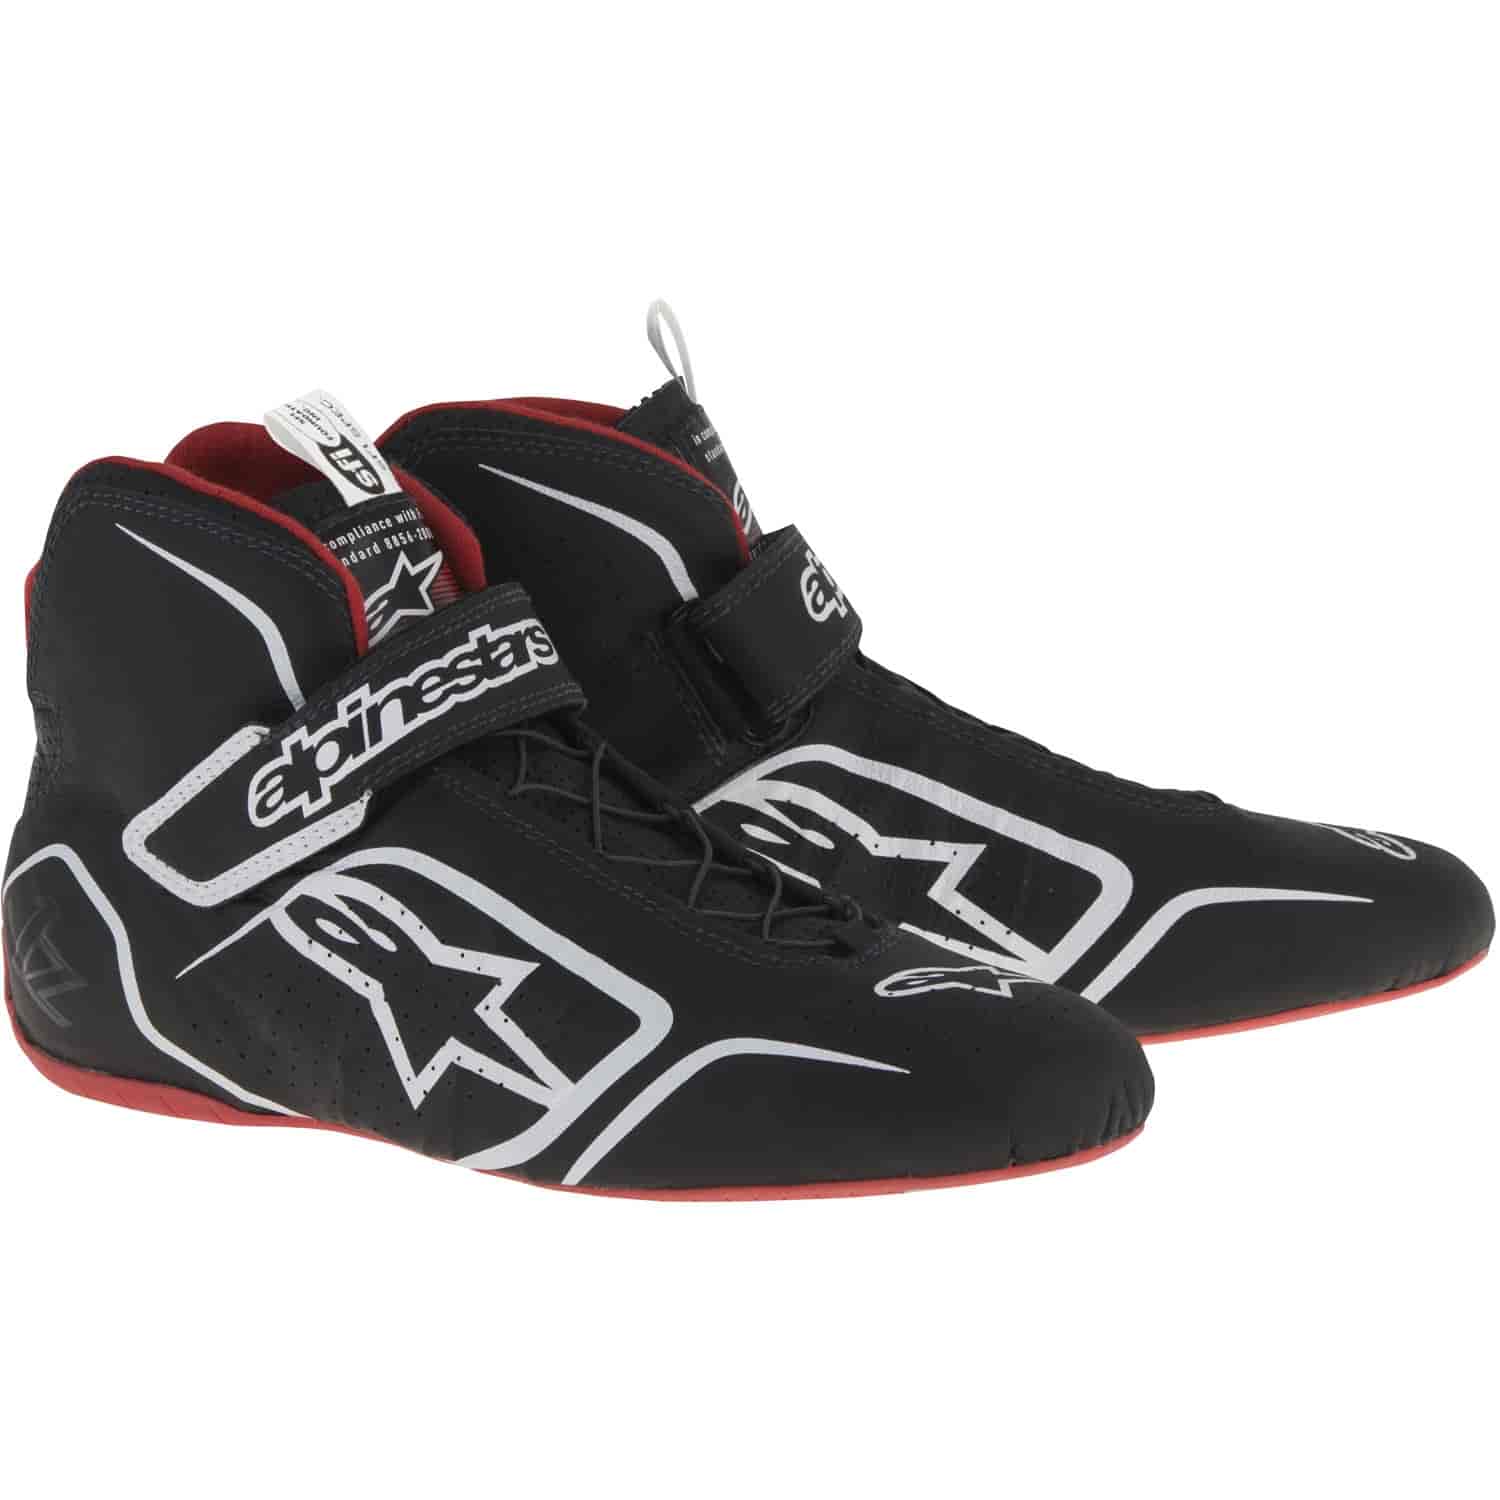 Tech 1-Z Shoe Black/White/Red SFI 3.3/5